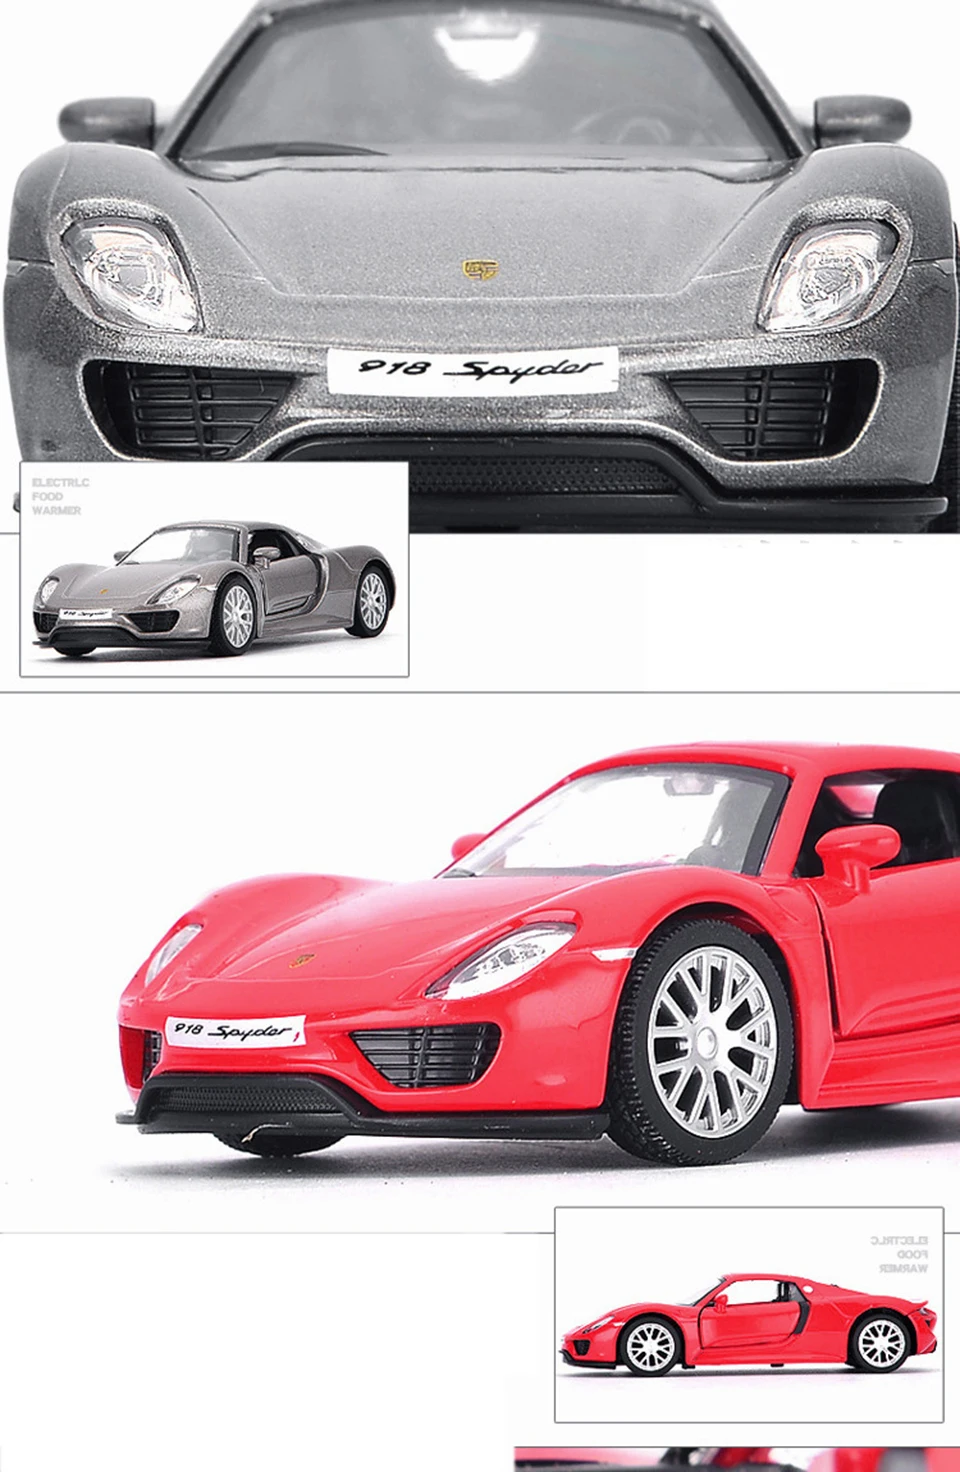 1:32 Porschee 918 машина Diecasts игрушечный транспорт горячая модель колеса автомобиля с машиной Горячая дверь колеса можно открыть игрушку